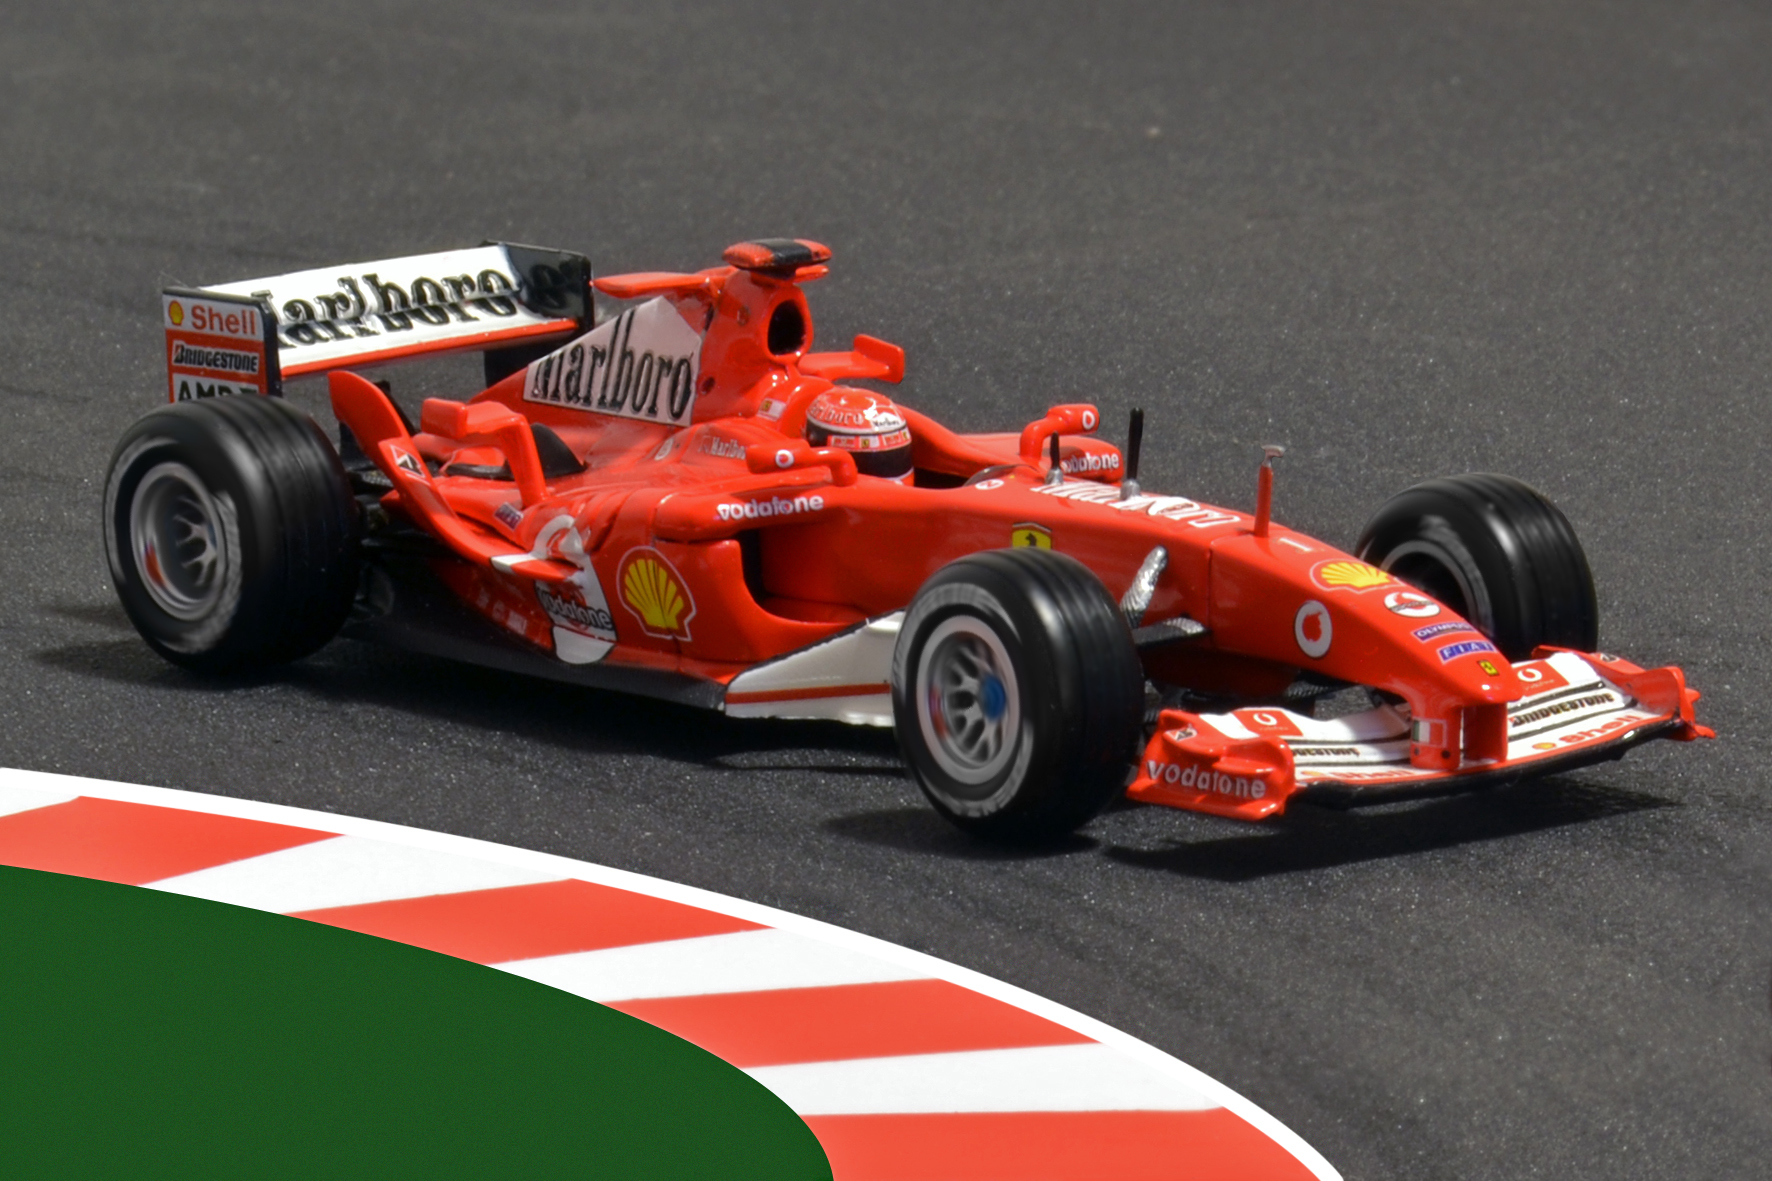 Év:2004<br />Modell: F2004<br />Pilóta: Michael Schumacher<br />Gyártó: Hot Wheels